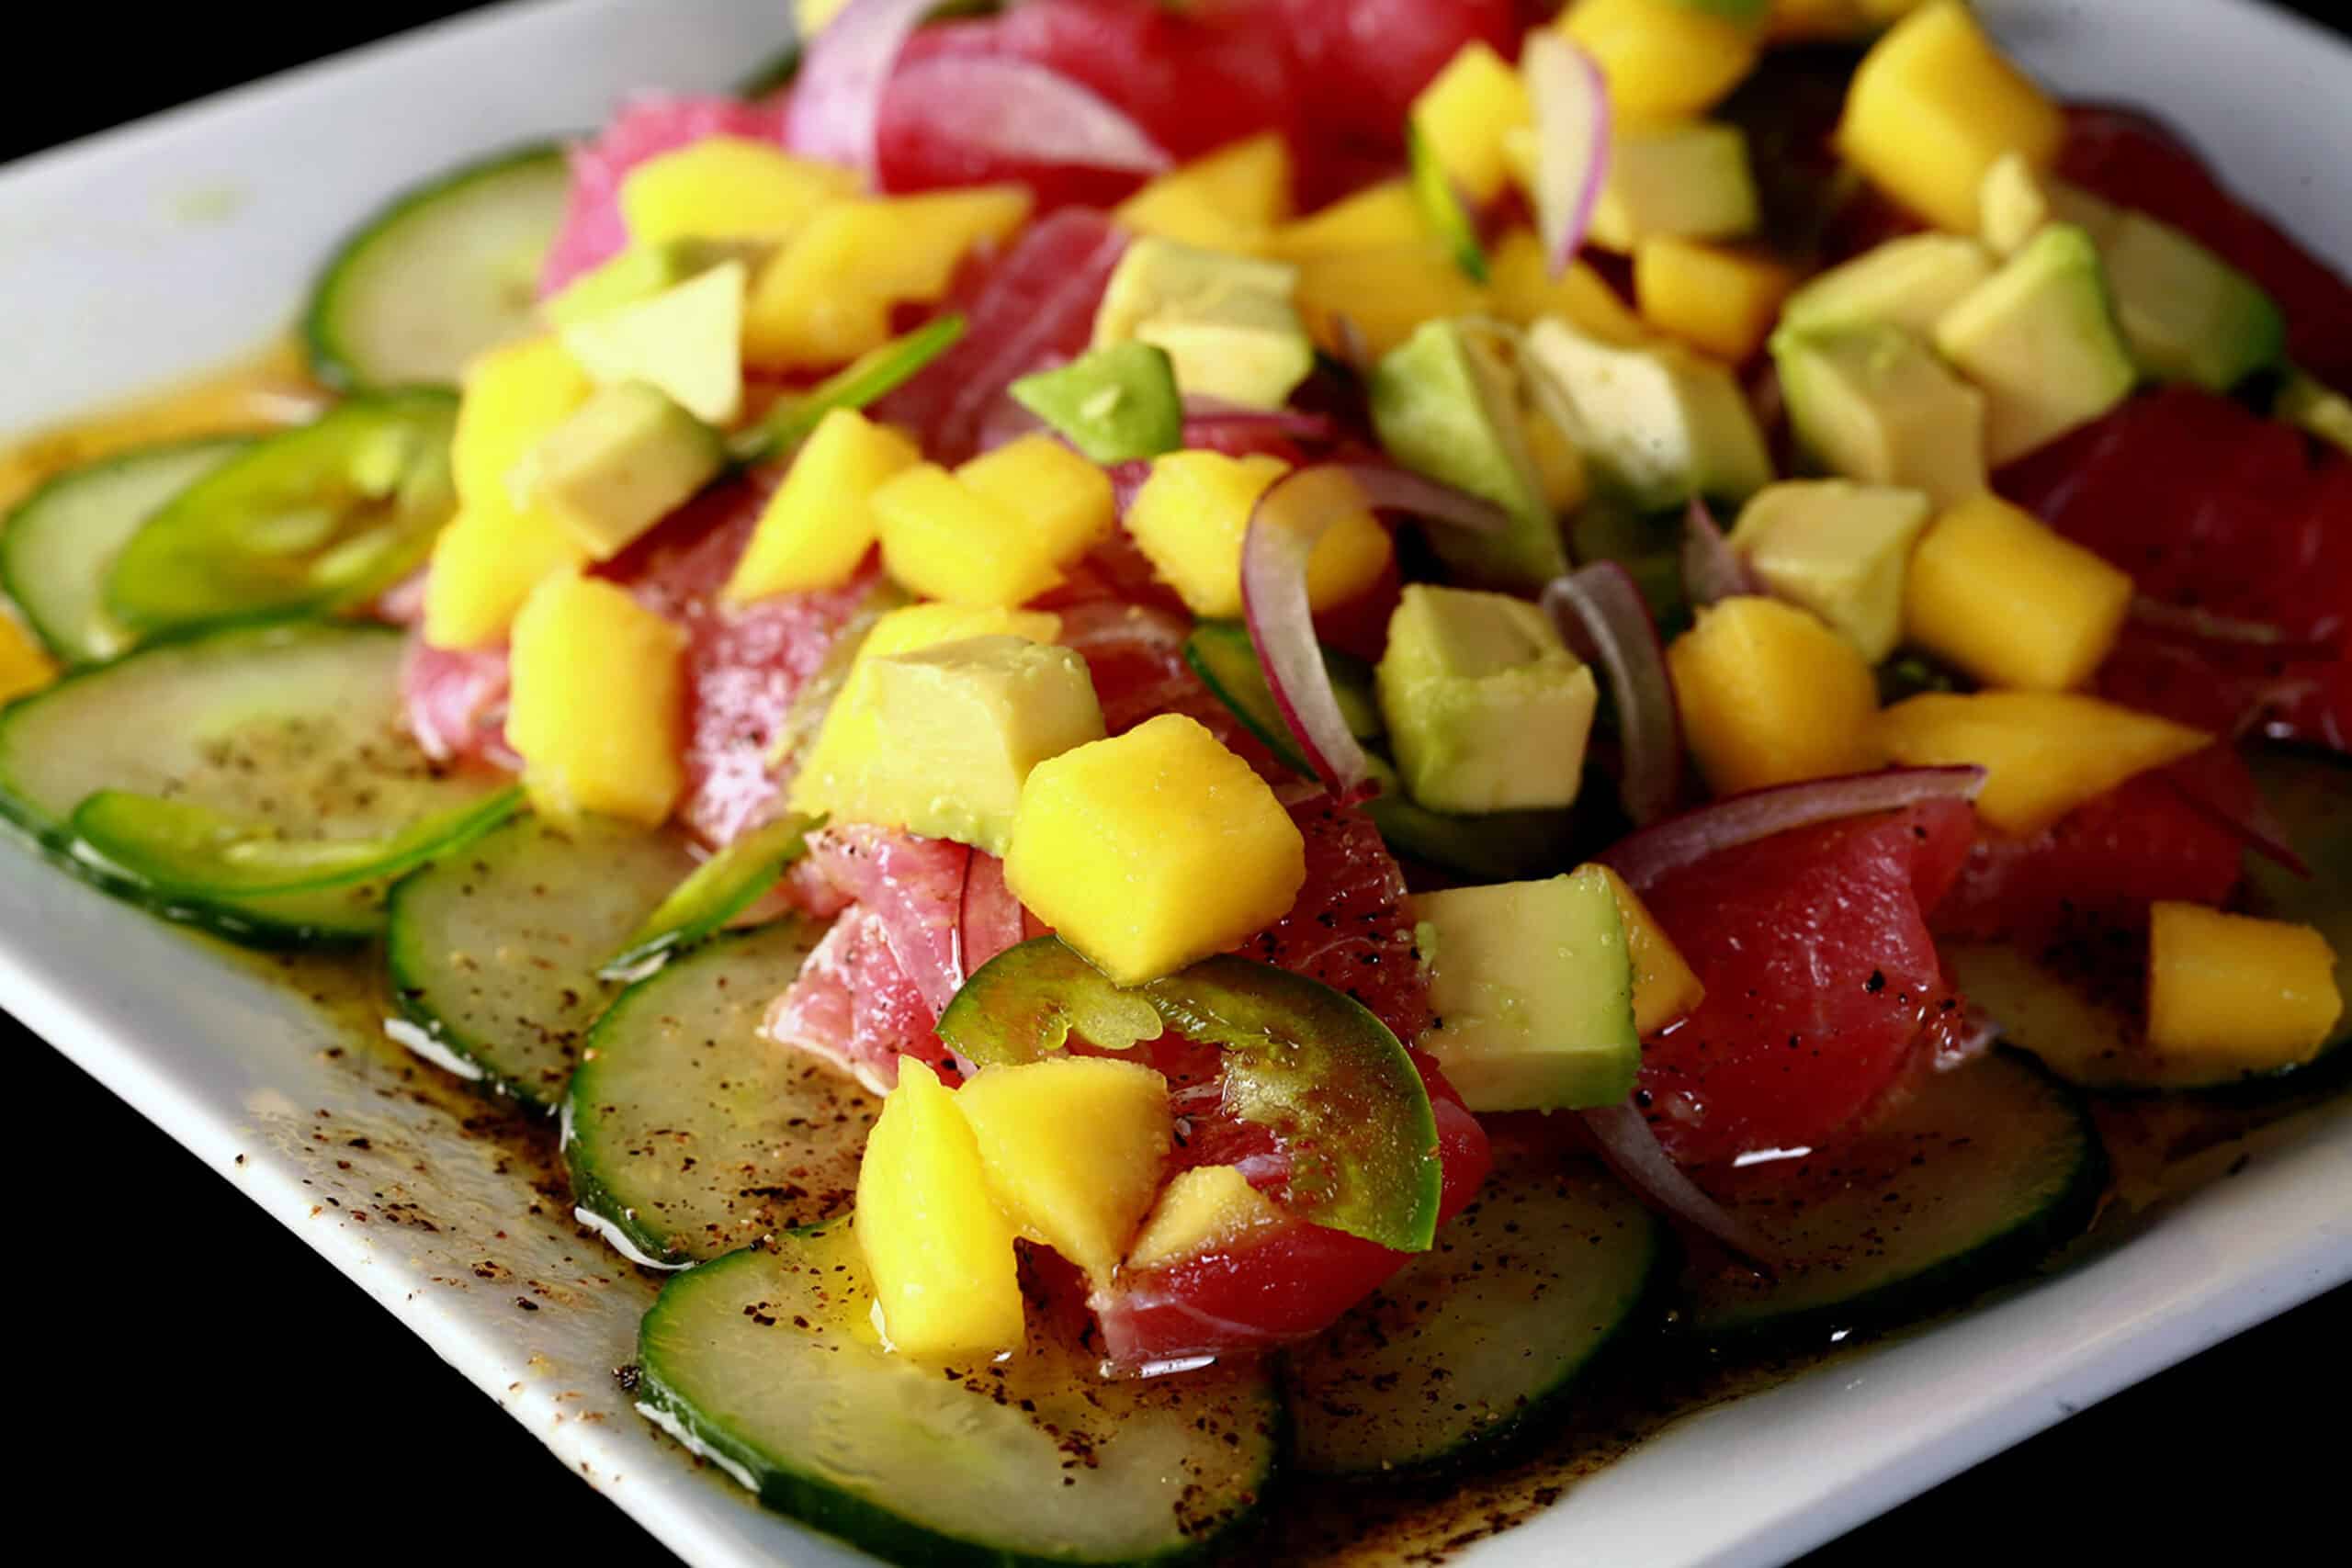 A close up photo of ahi tuna crudo, with mango, avocado, jalapenos, and a citrus vinaigrette, served over cucumber slices.